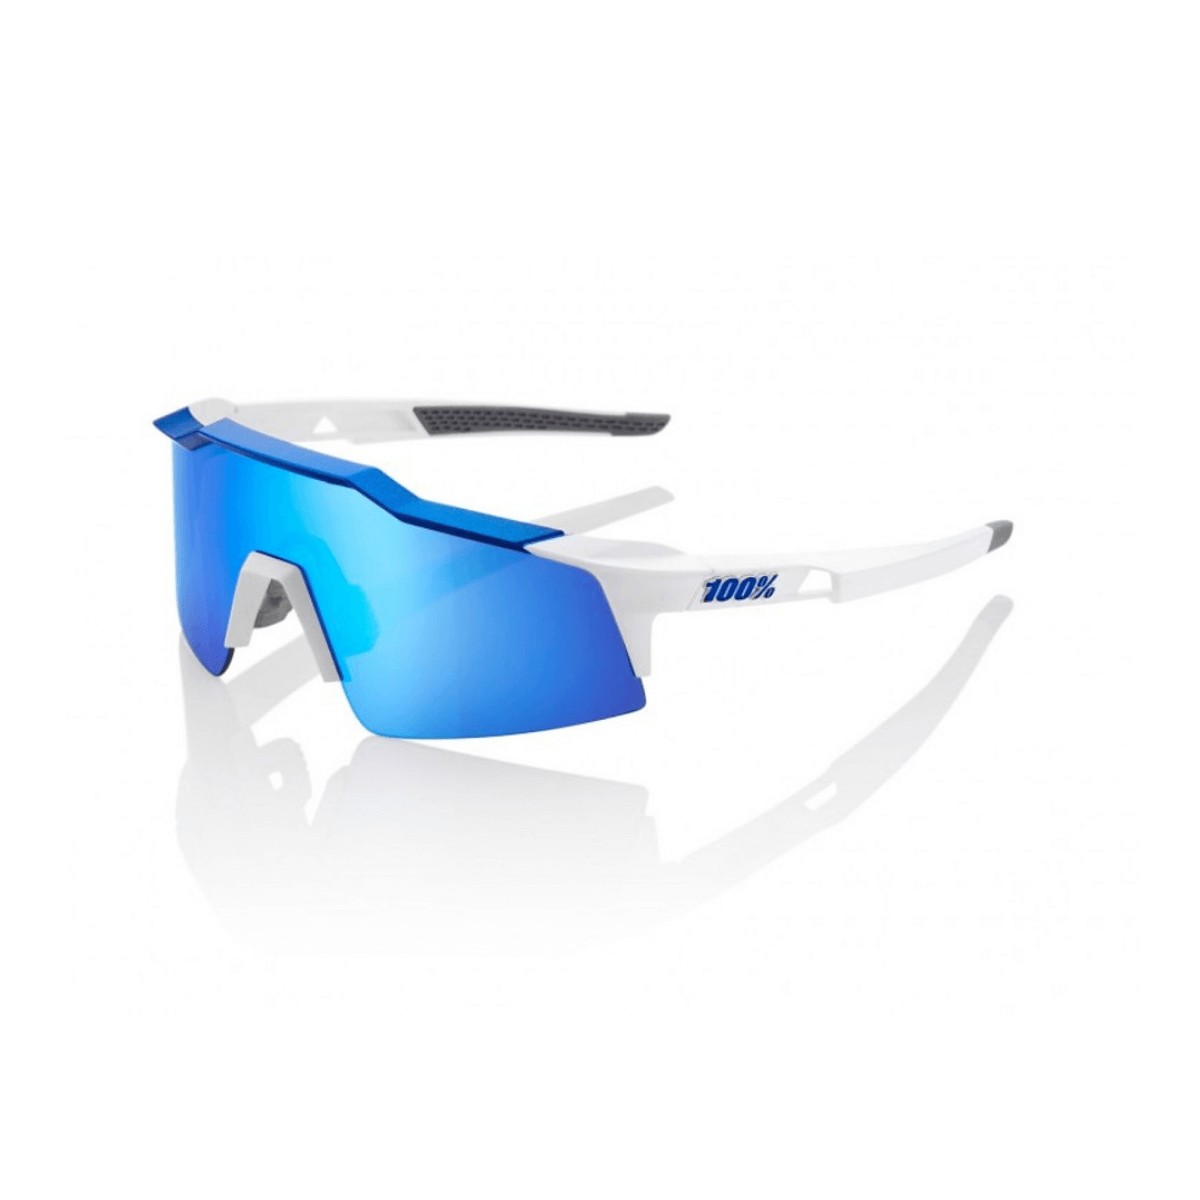 Goggles 100% Speedcraft SL Matte White Metallic Blue HiPER Blue Gläser